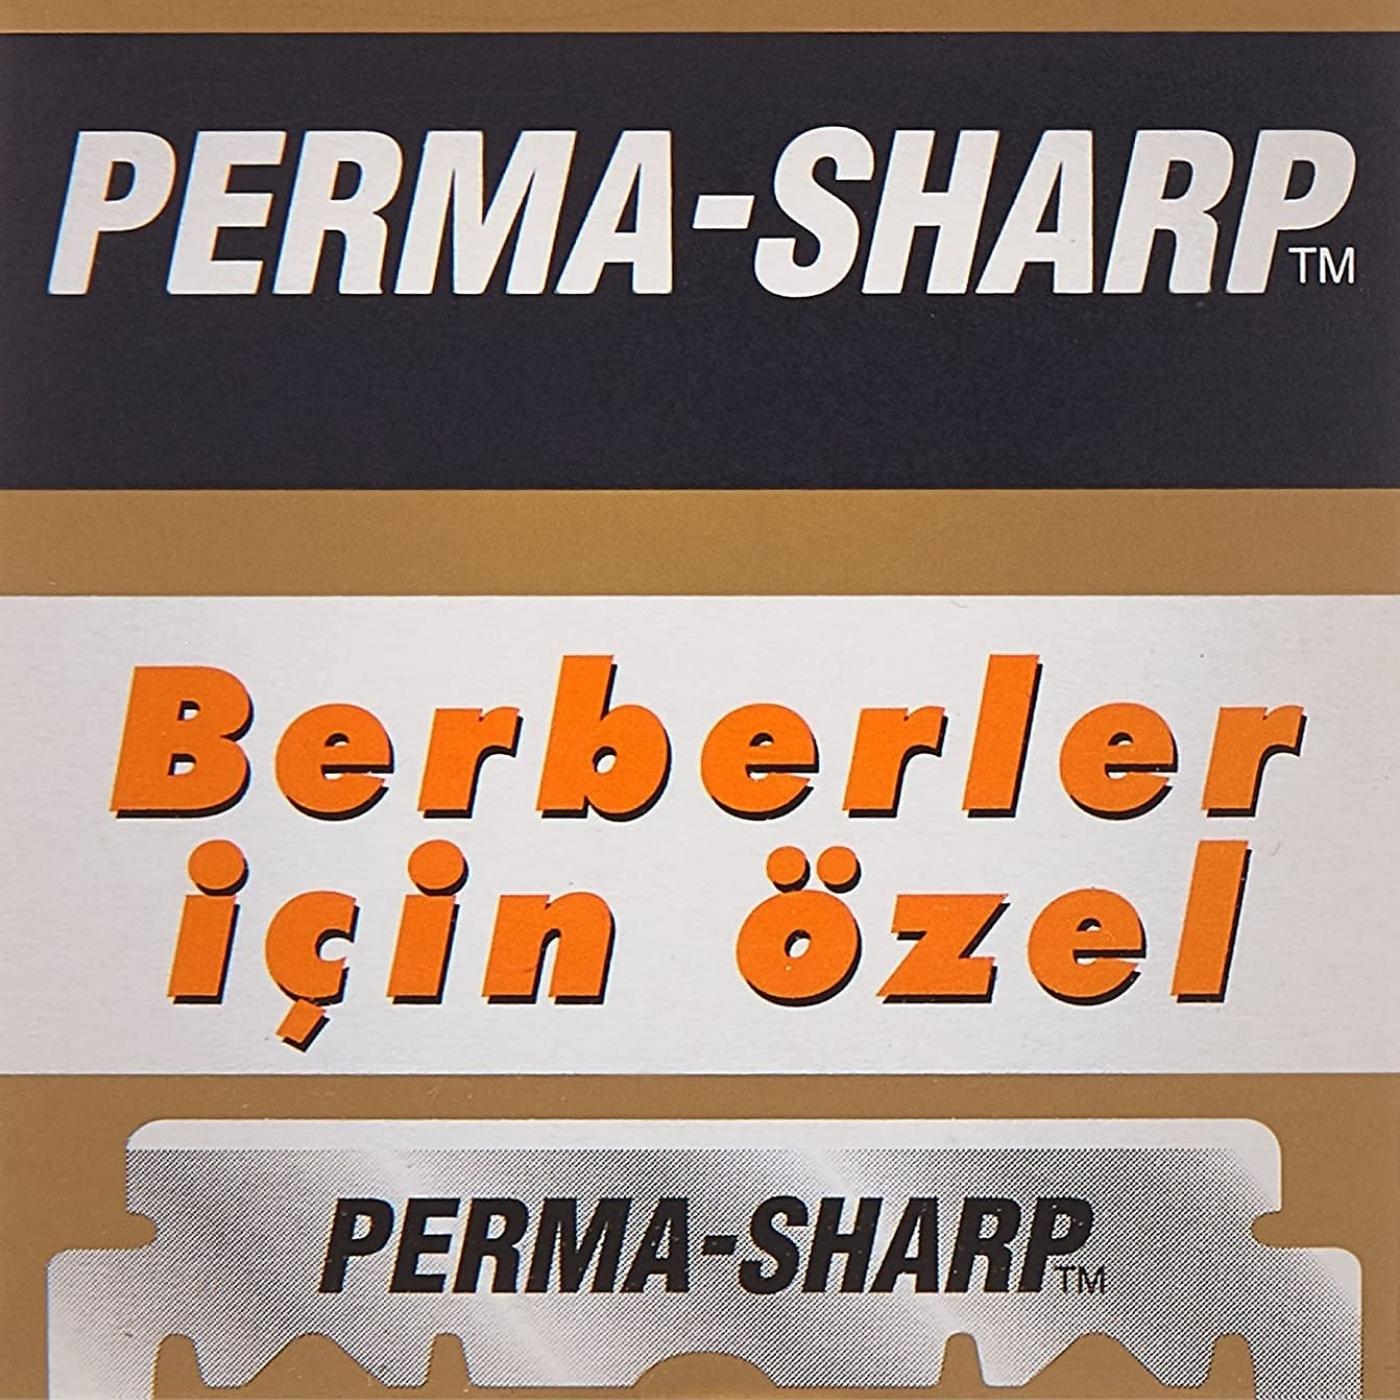 Perma-Sharp halbe Klinge Rasierklingen Packungsinhalt 100 StÃ¼ck